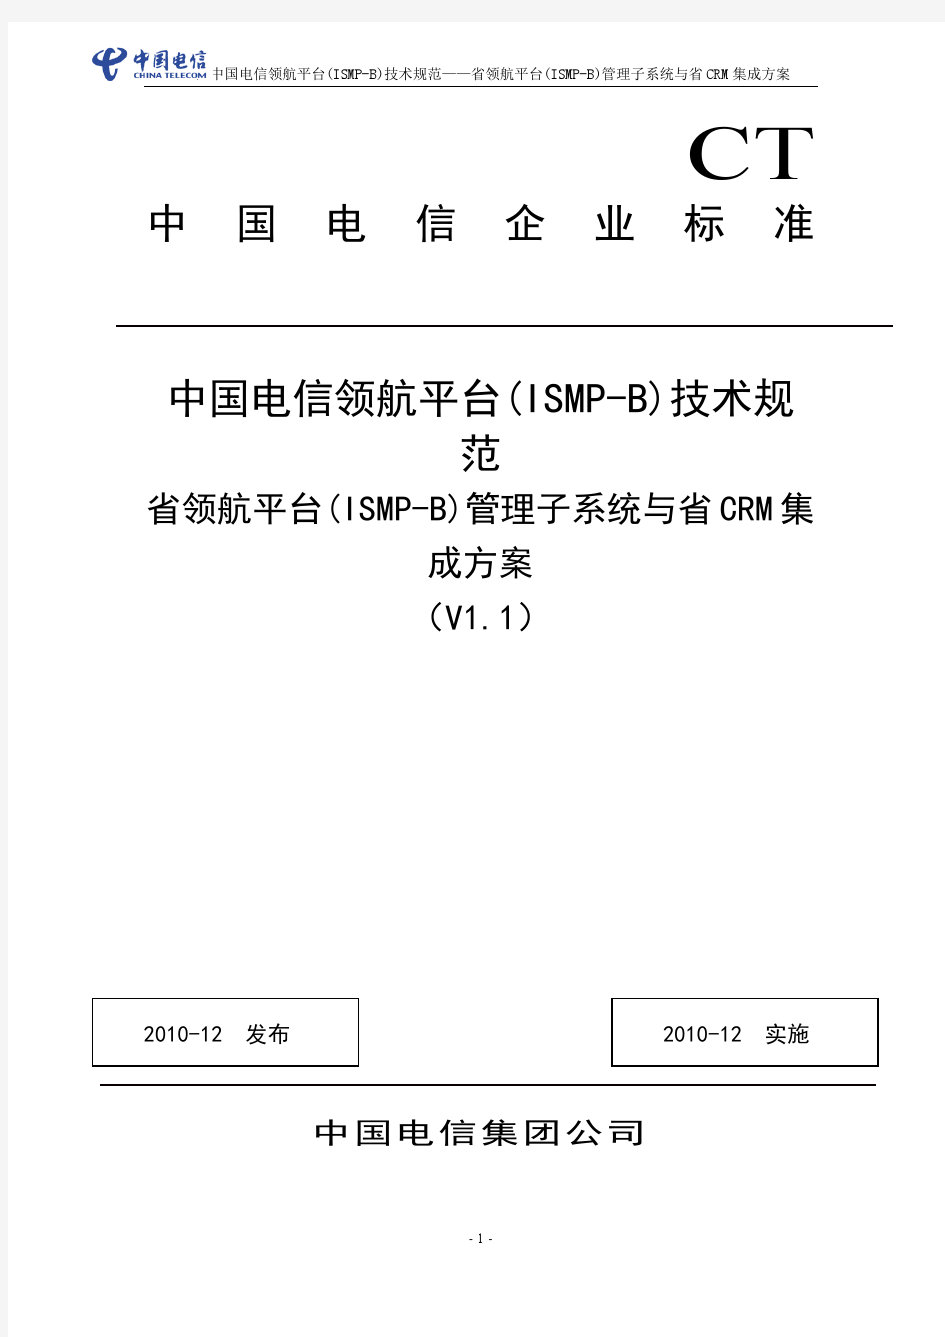 中国电信领航平台(ISMP-B)技术规范——省领 航平台(ISMP-B)管理子系统与省CRM集成方案(V1.1 )